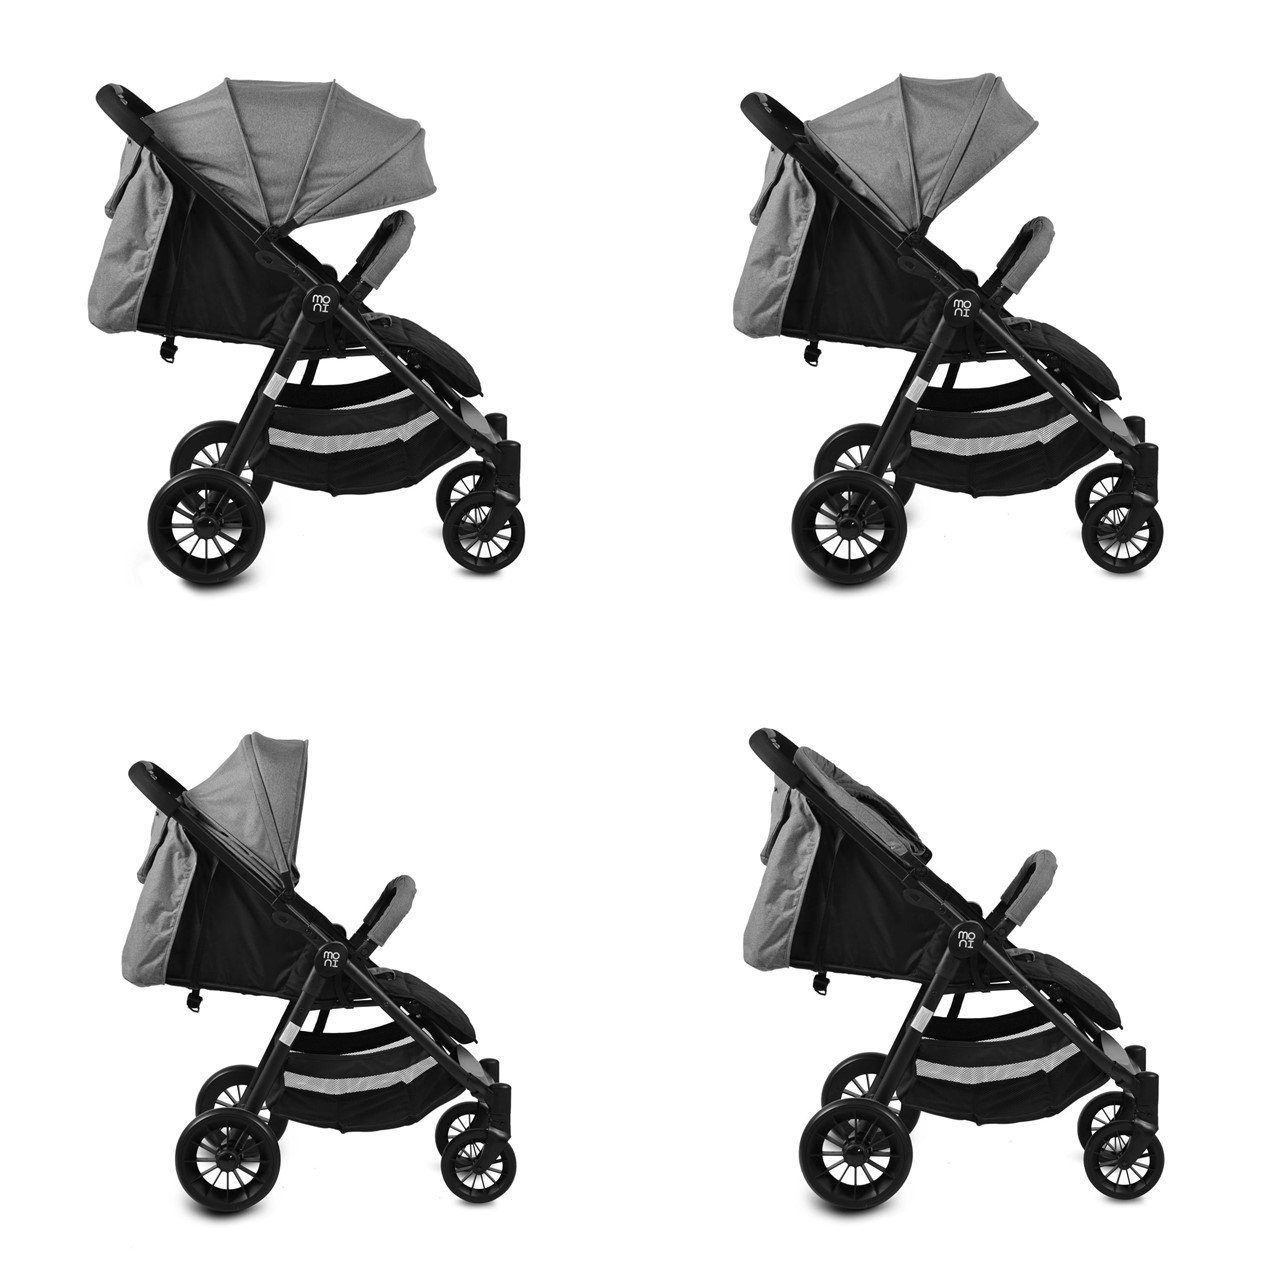 Kinder Kinderwagen Moni Kombi-Kinderwagen Kinderwagen, Babyschale Sindy 2 in 1, klappbar, Babyschale 0+, Vorderräder schwenkbar